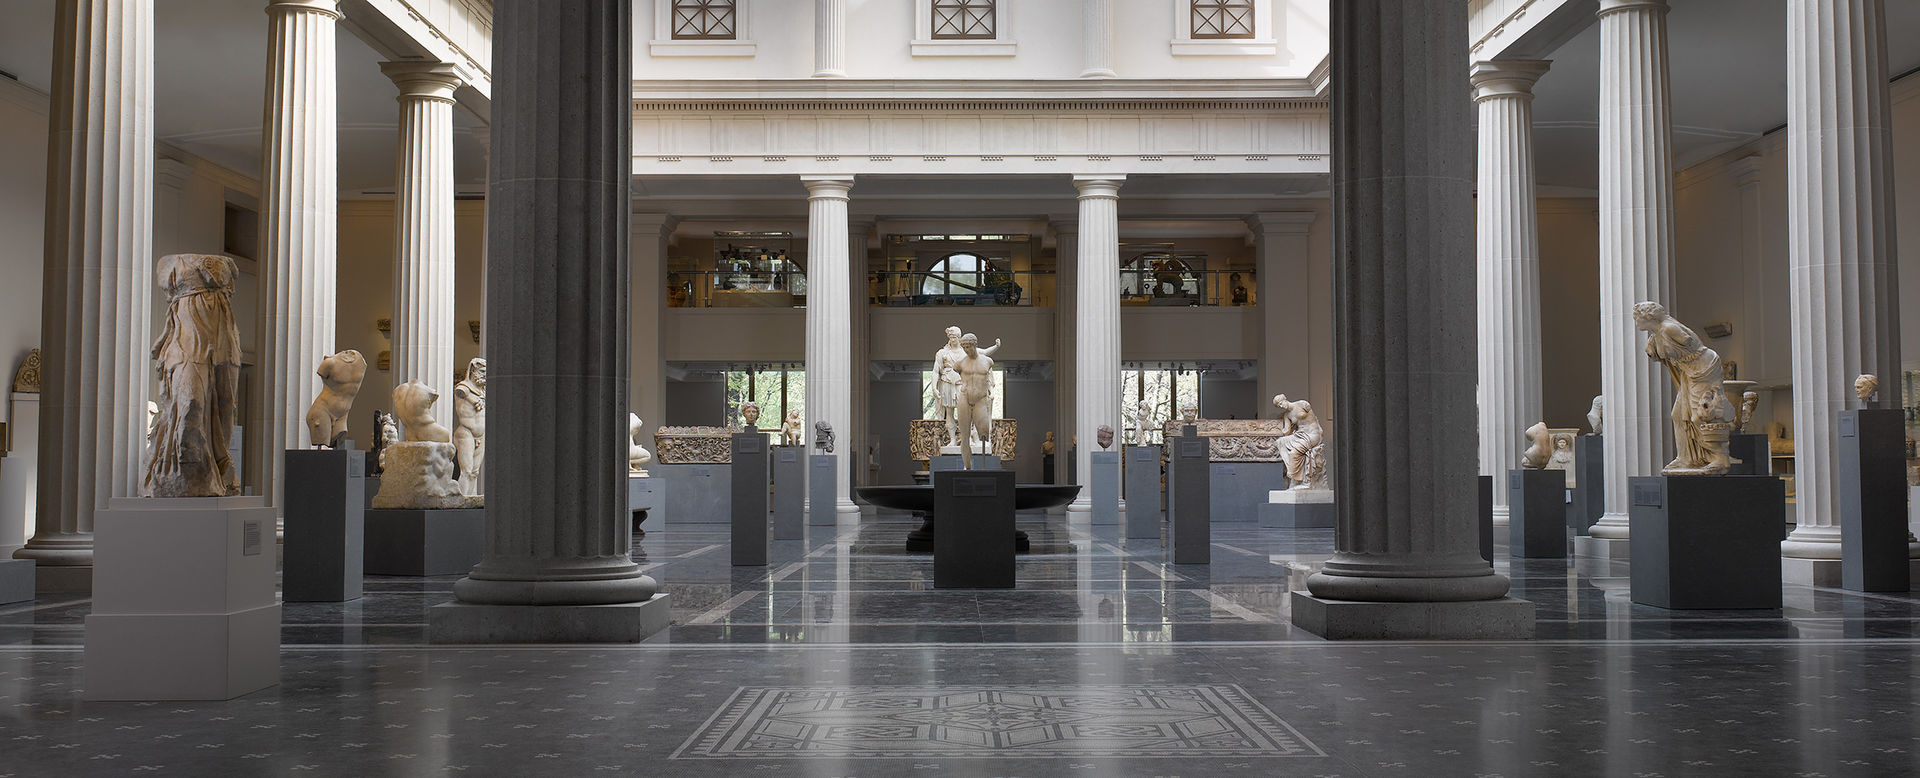 Una galleria molto ampia racchiusa da un colonnato e piena di sculture in pietra dell'antica Roma illuminate dalla luce solare naturale.